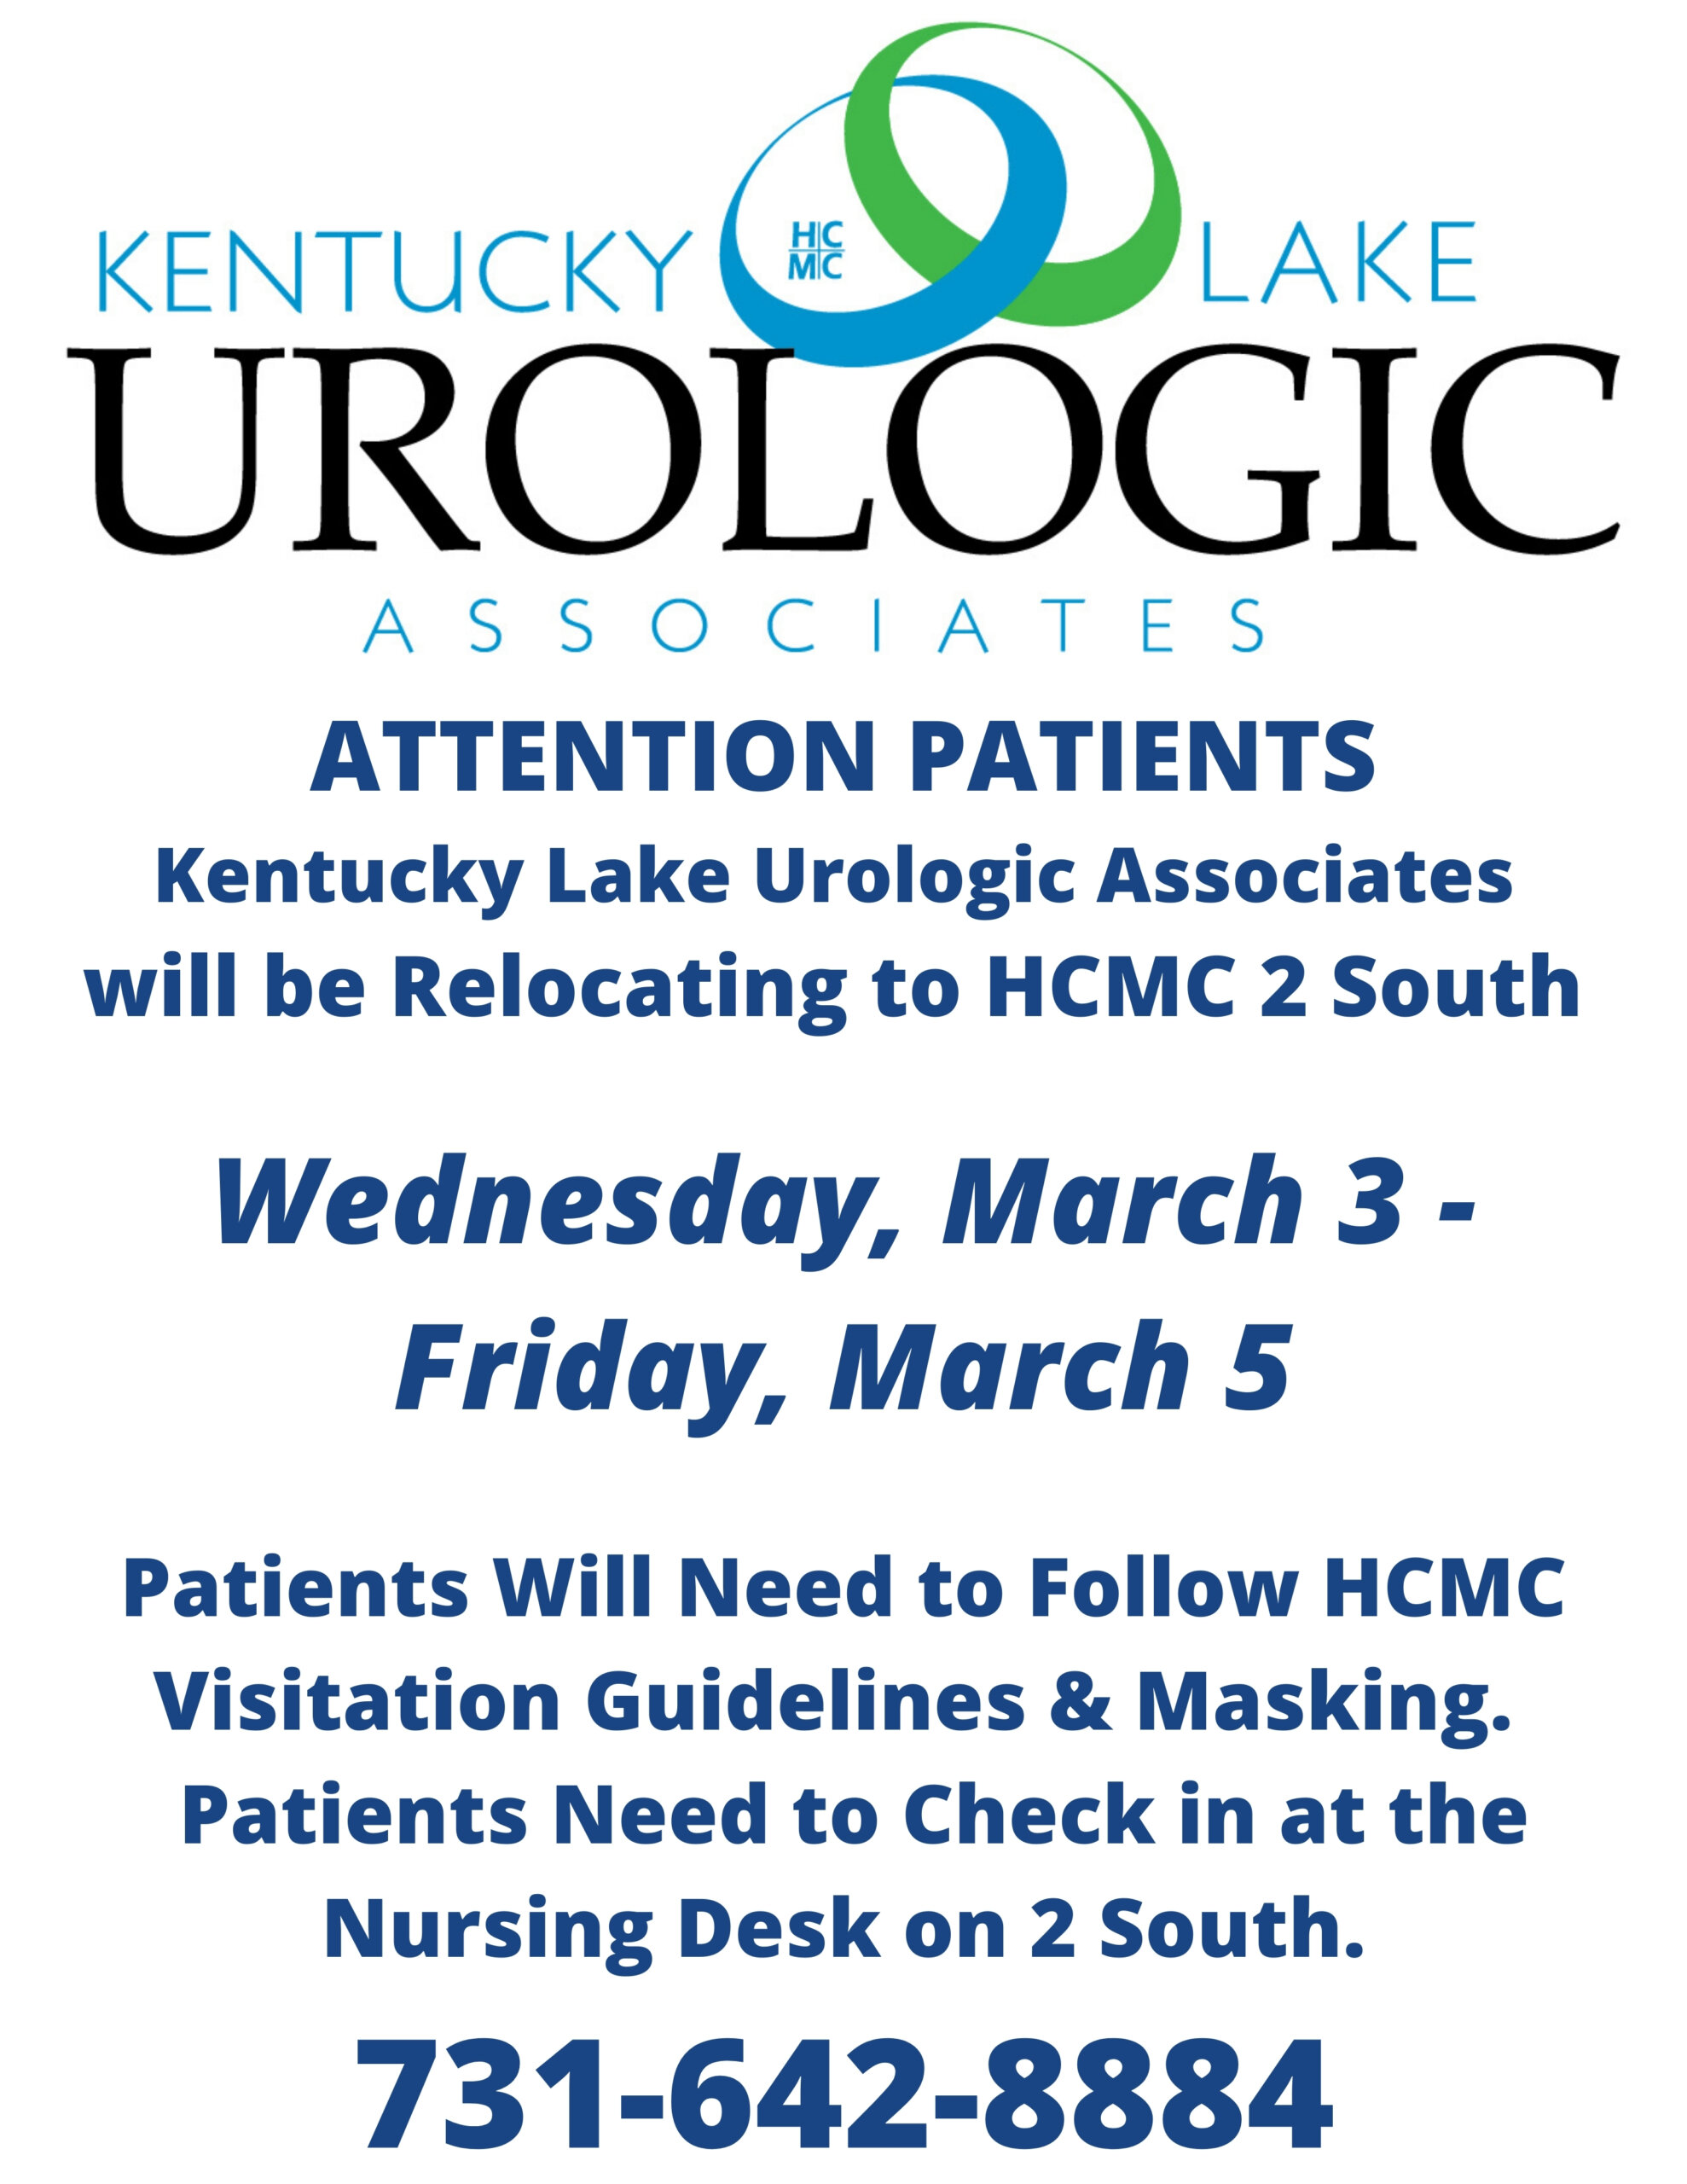 Kentucky Urologic Associates Center of Excellence